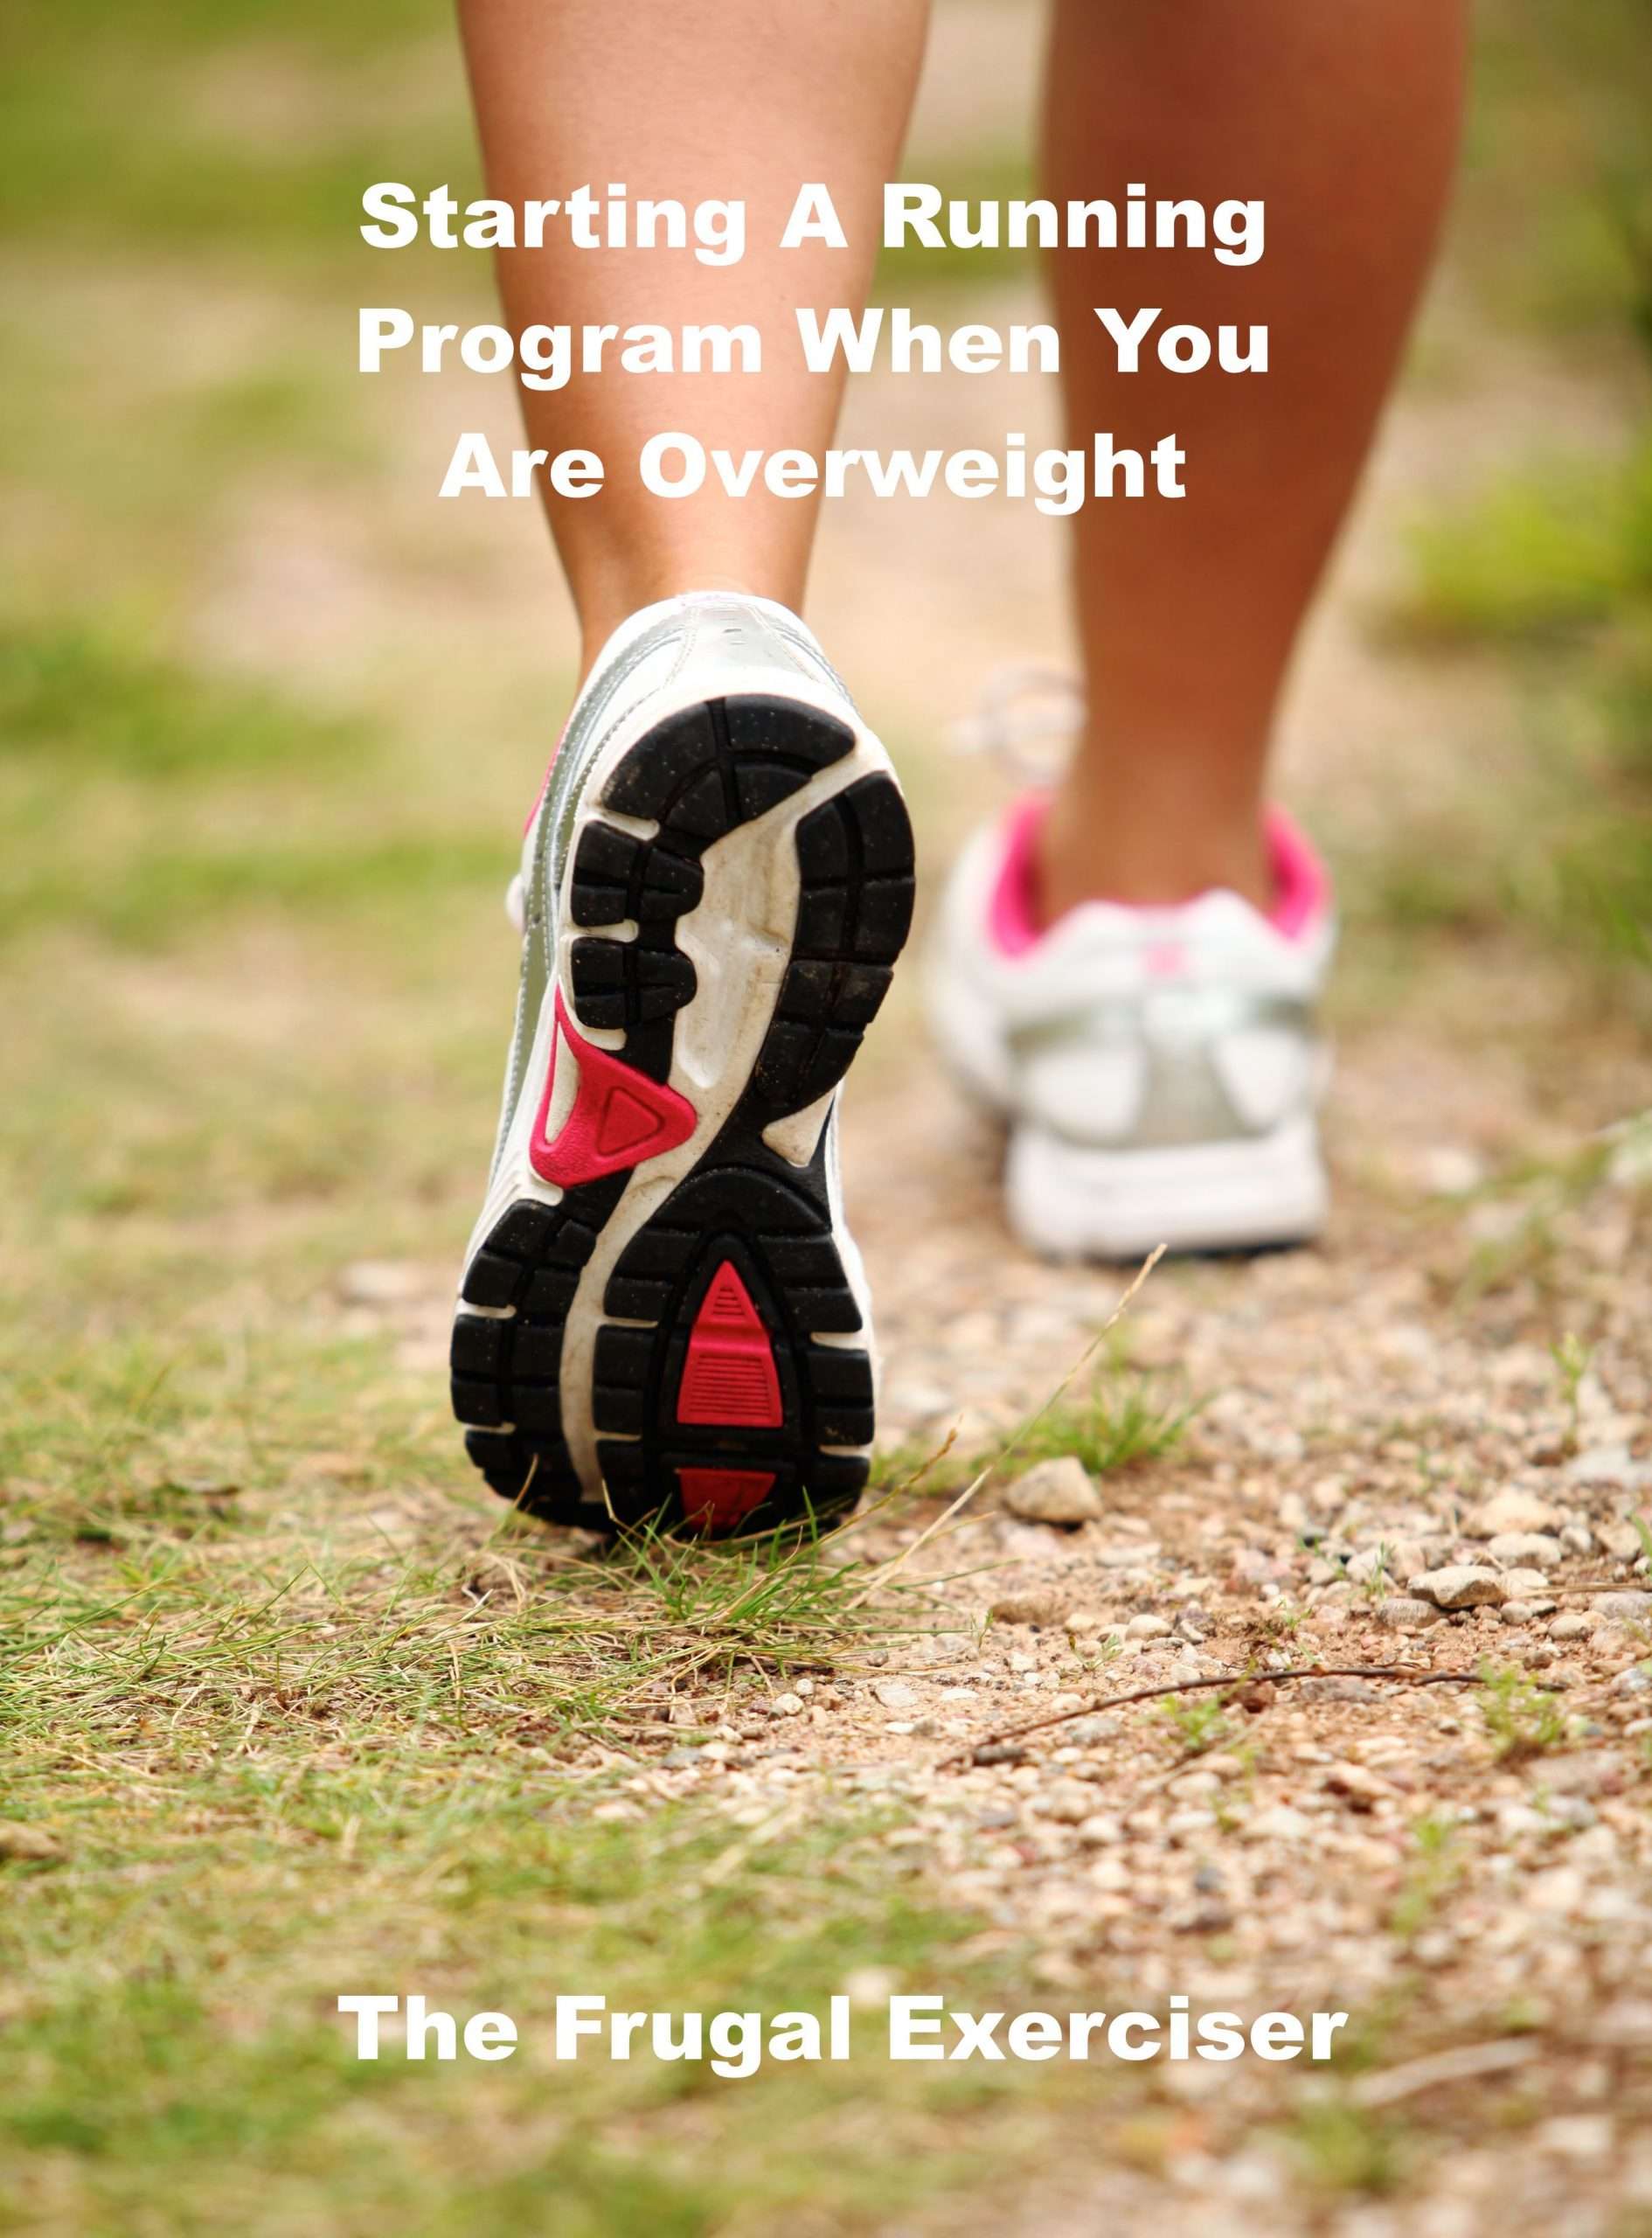 Starting A Running Program When Overweight